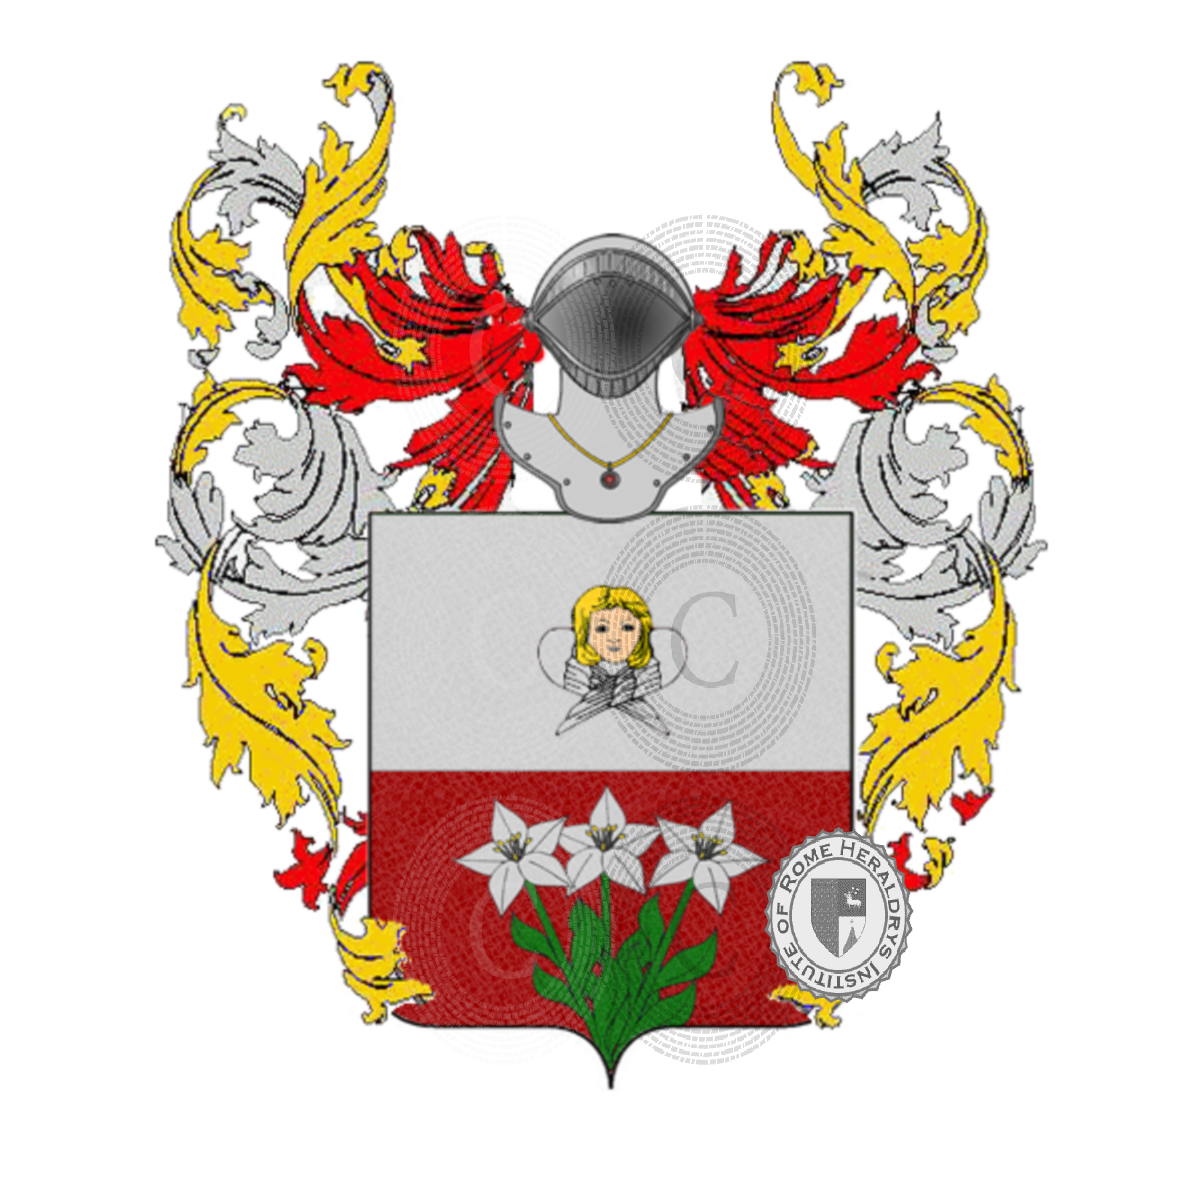 Coat of arms of familycherubini        